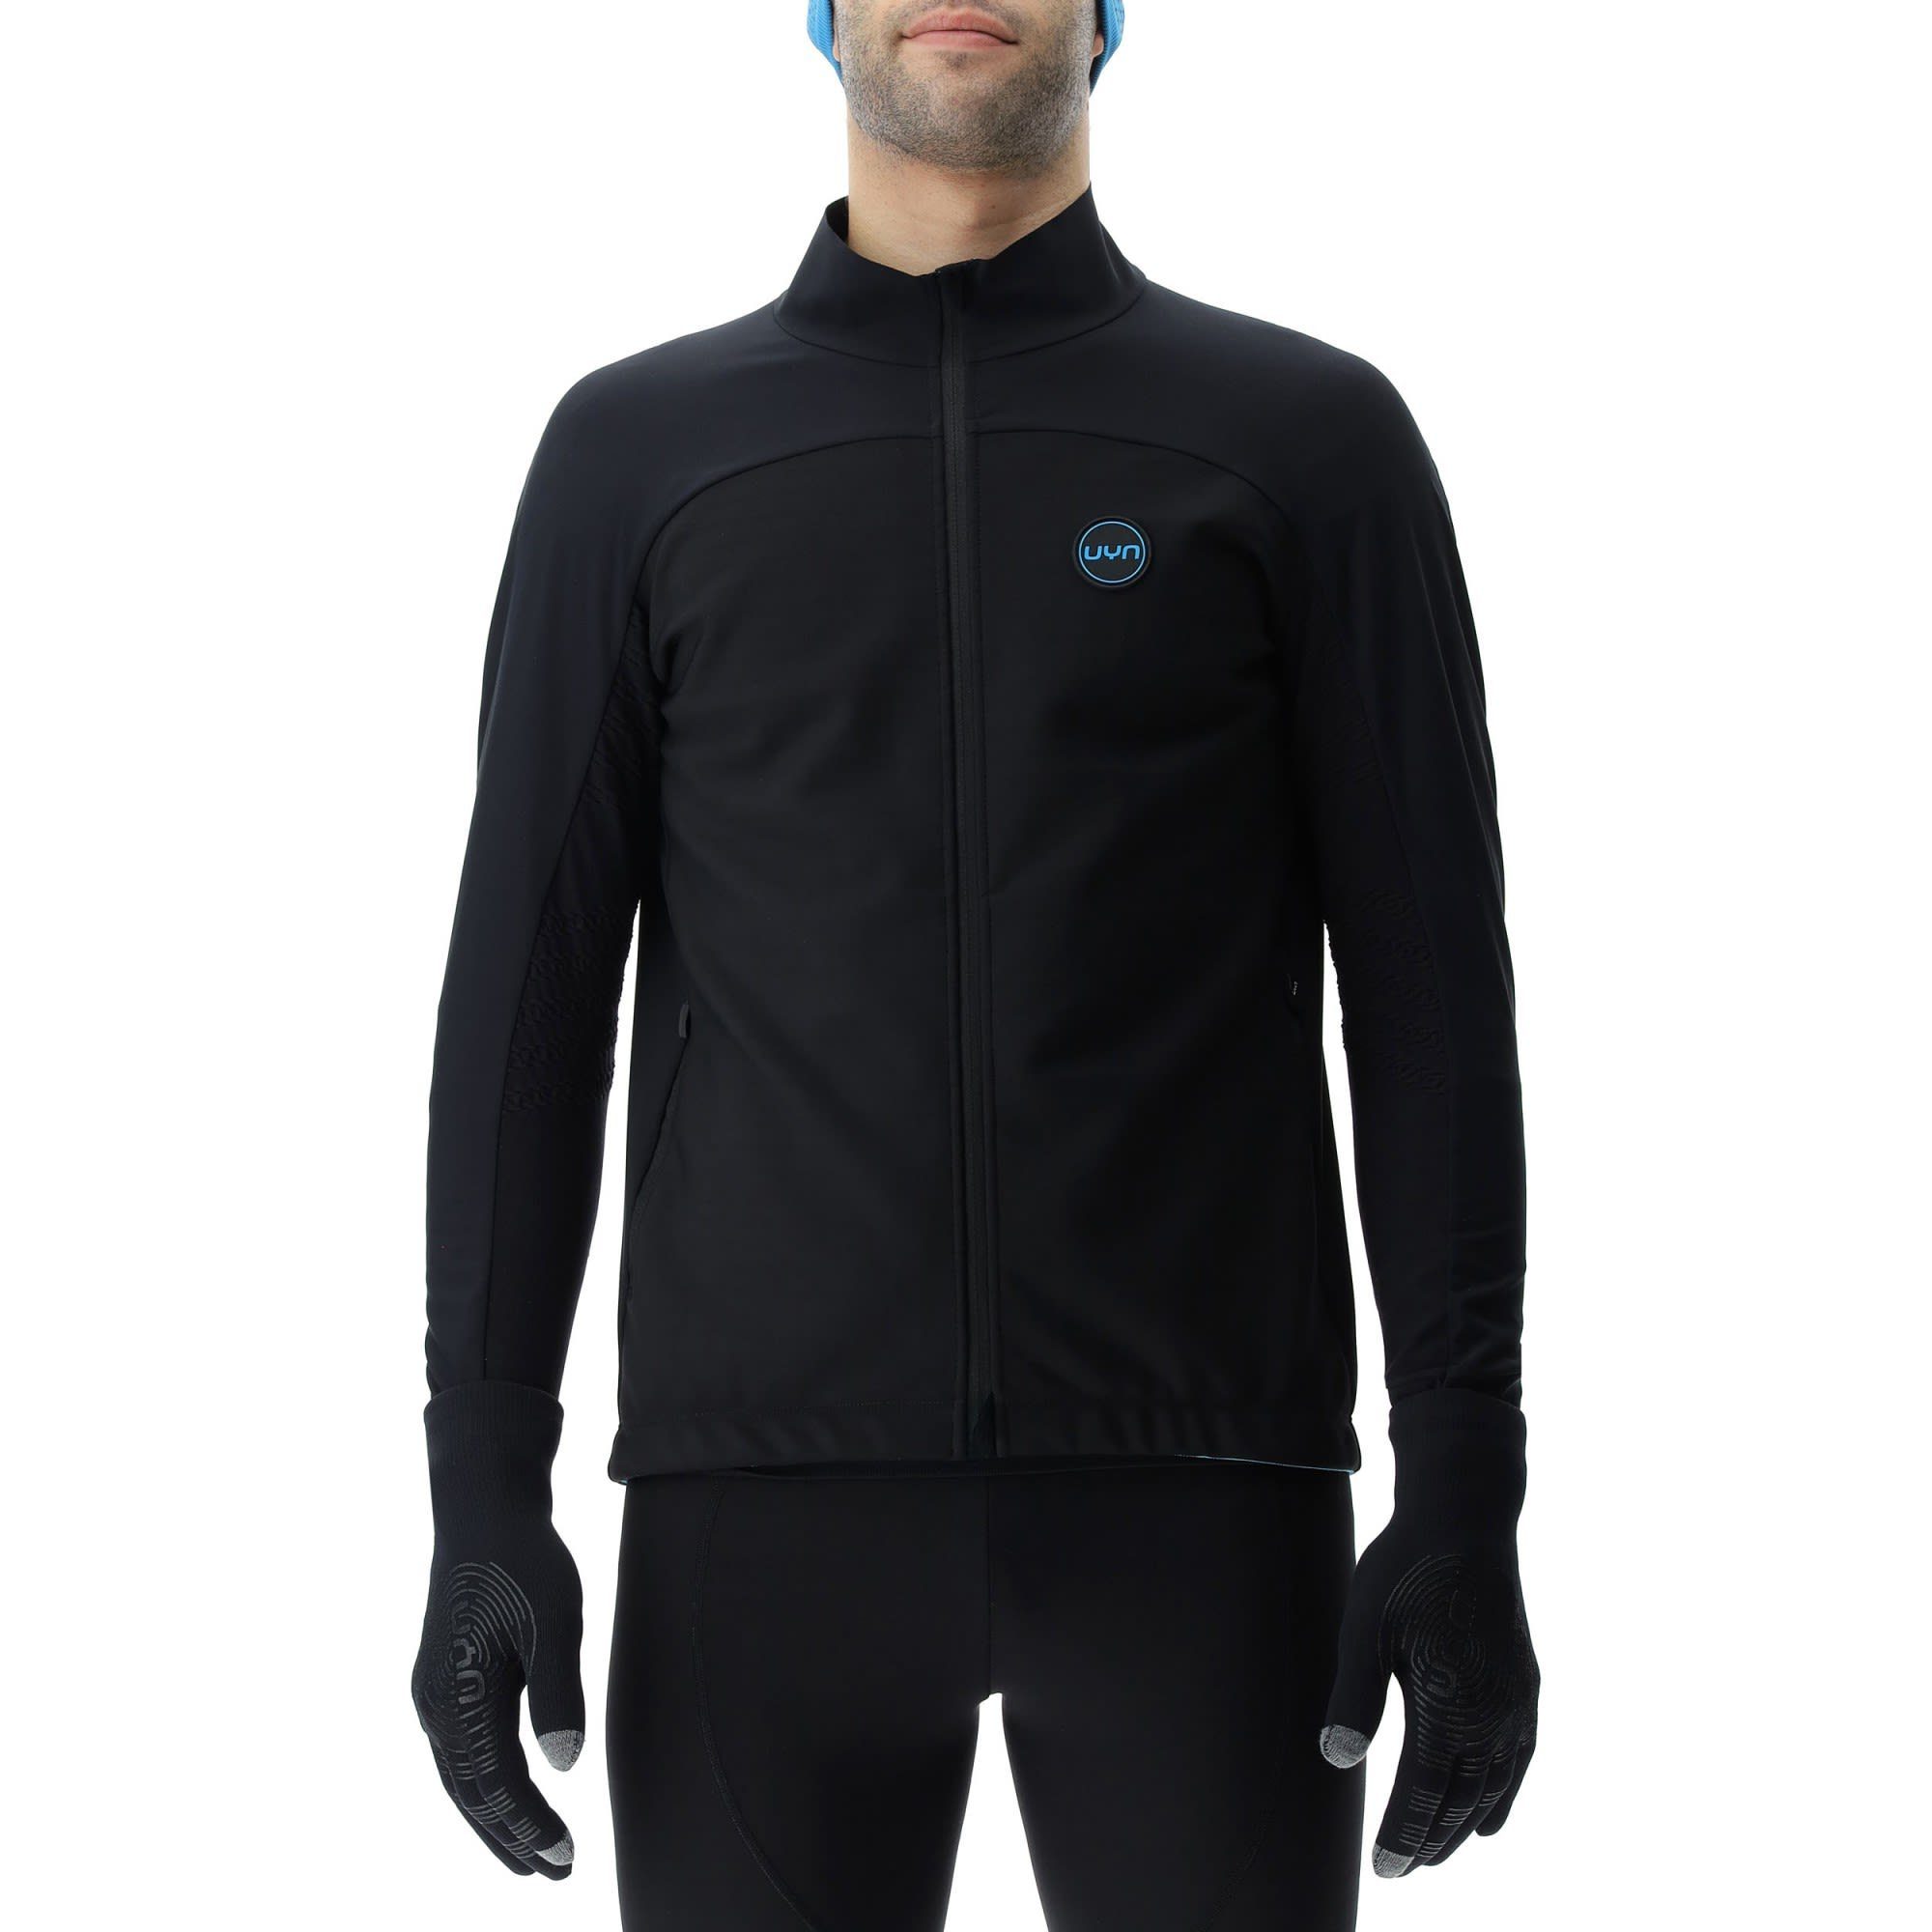 UYN Anorak Uyn M Cross Country Skiing Coreshell Jacket Herren Black - Black - Turquoise